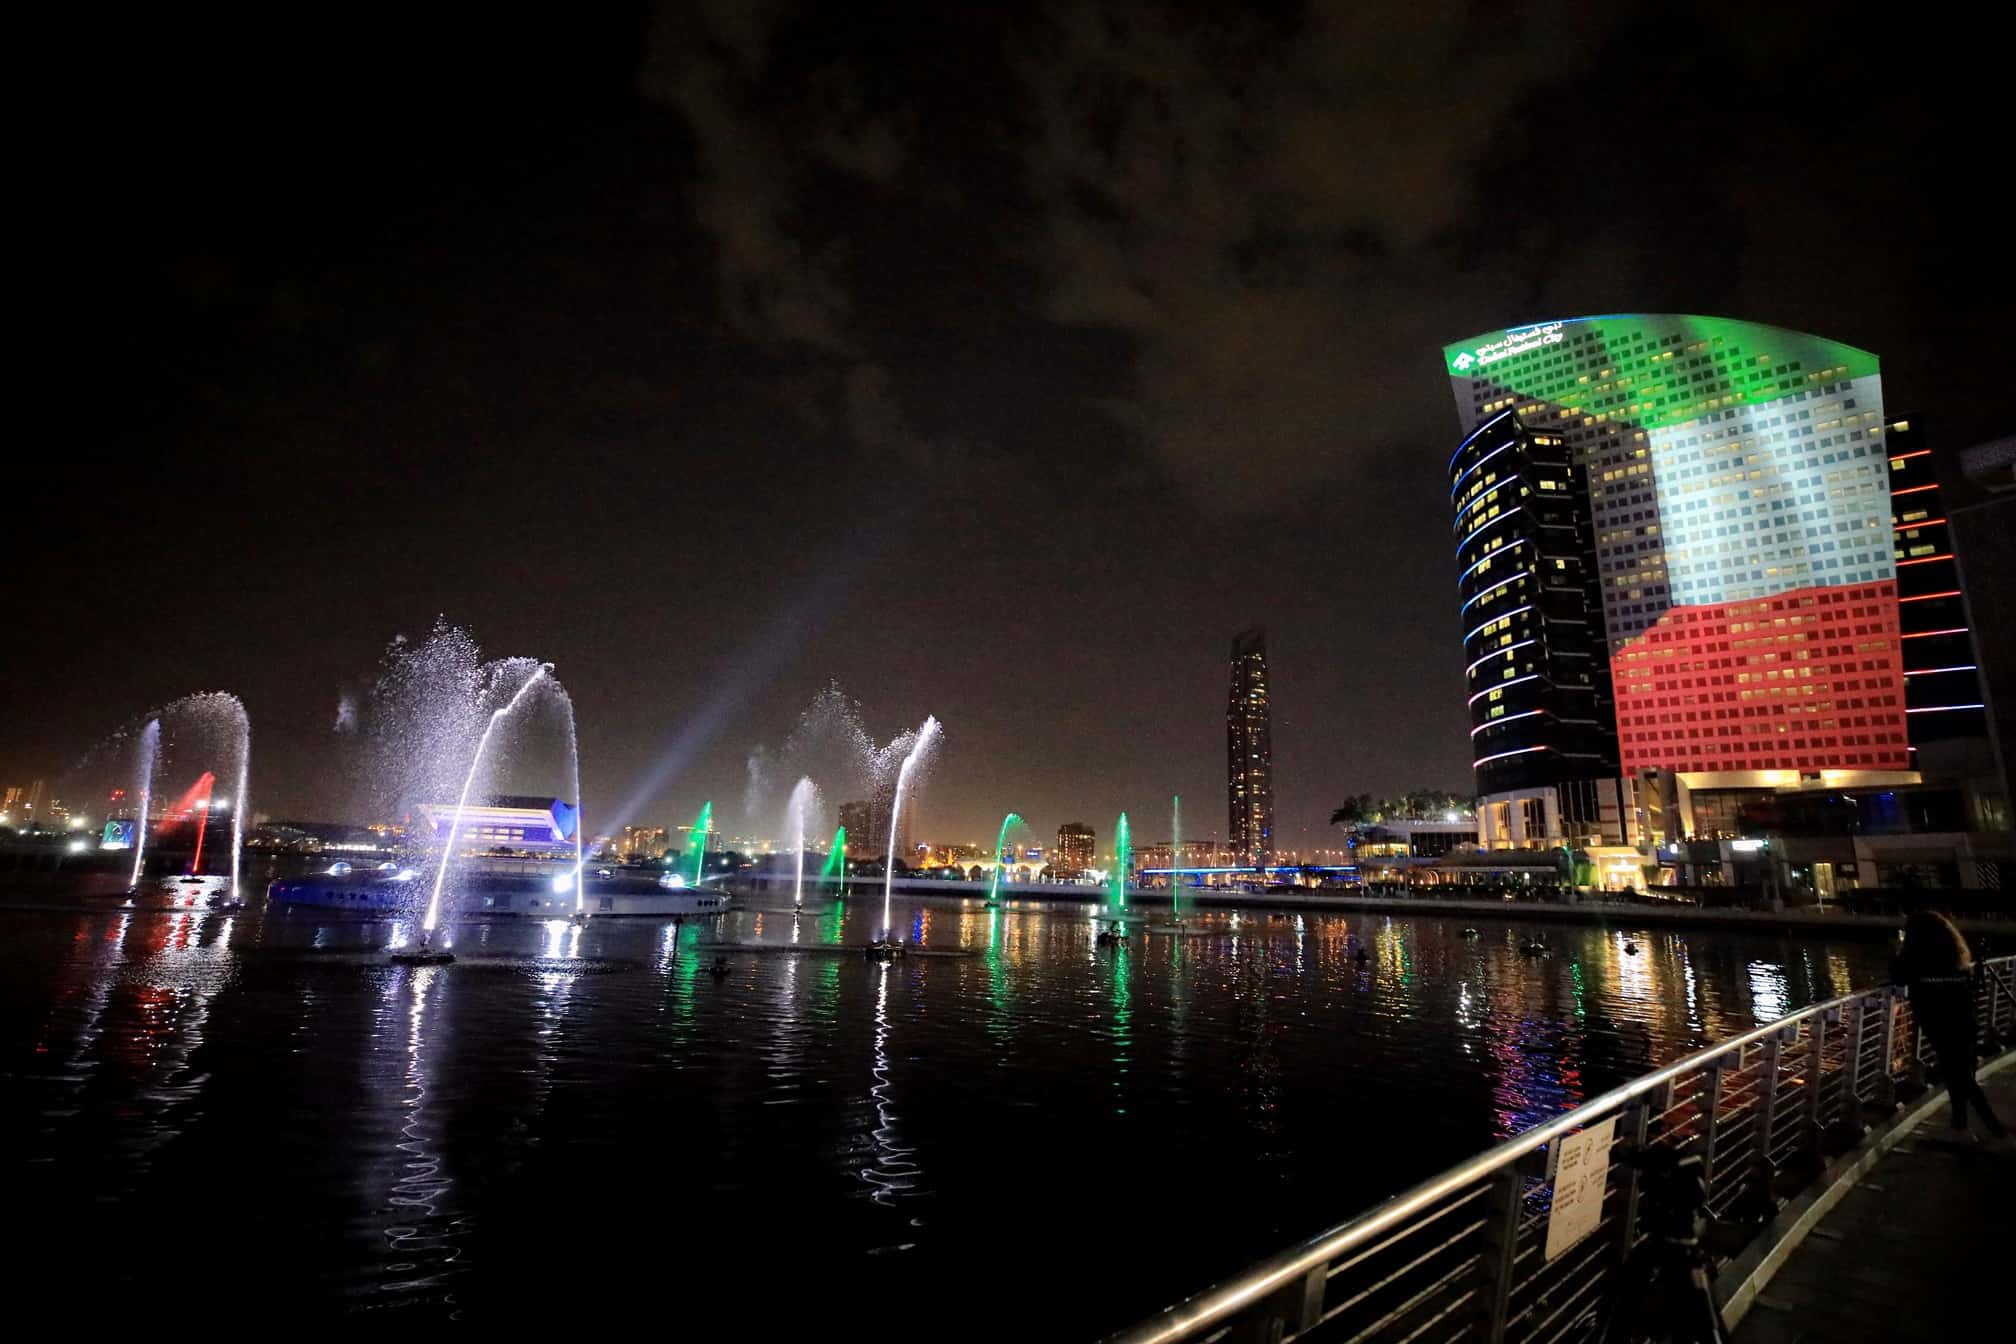 कुवैत राज्य के XNUMXवें राष्ट्रीय दिवस के उपलक्ष्य में दुबई के सबसे प्रमुख स्थलों को रोशन करना